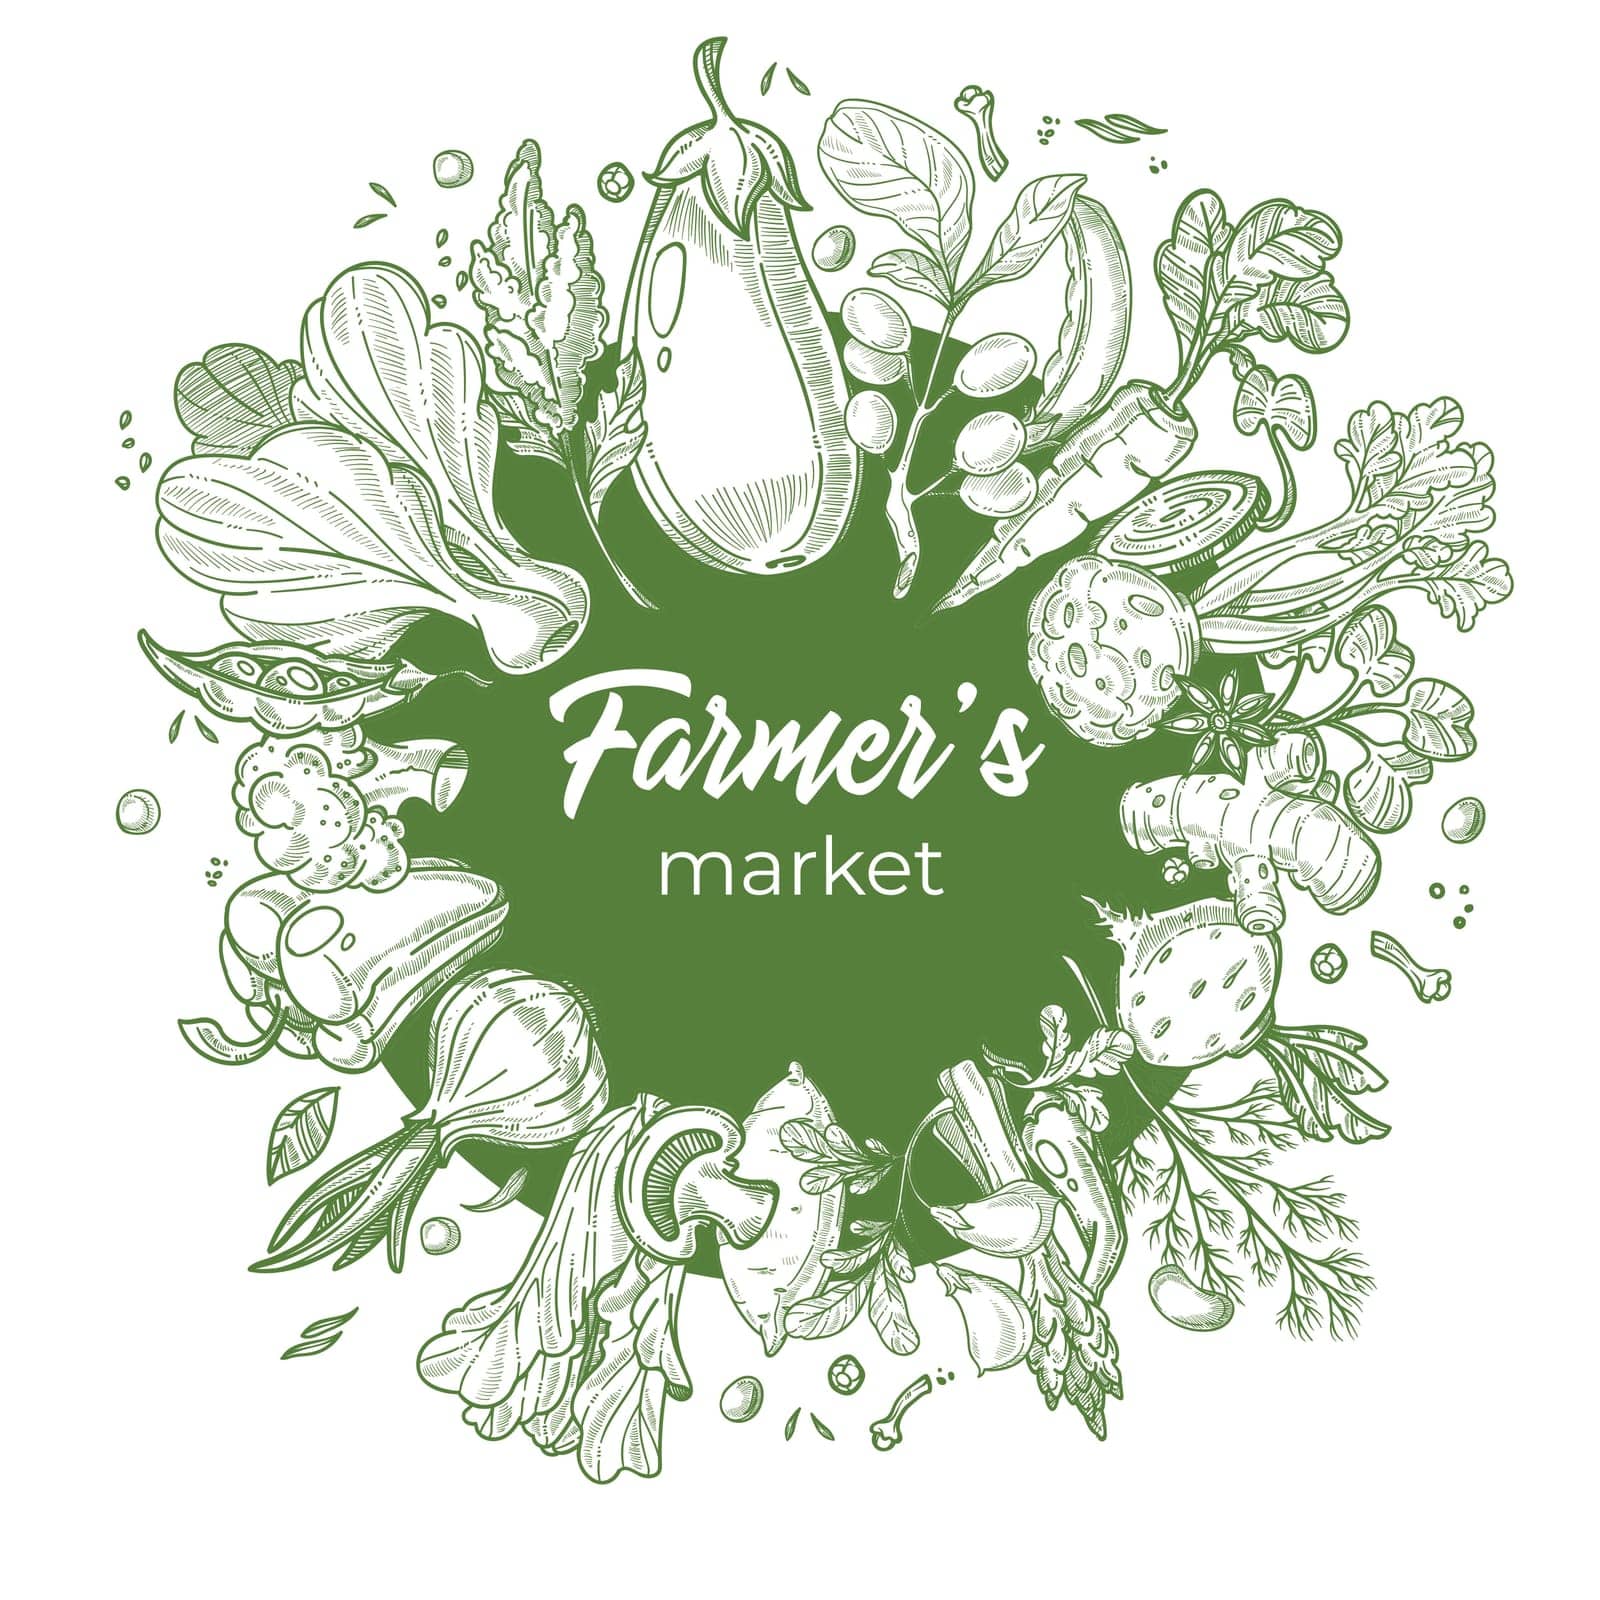 Farmers market logotype for vegetables seller by Sonulkaster